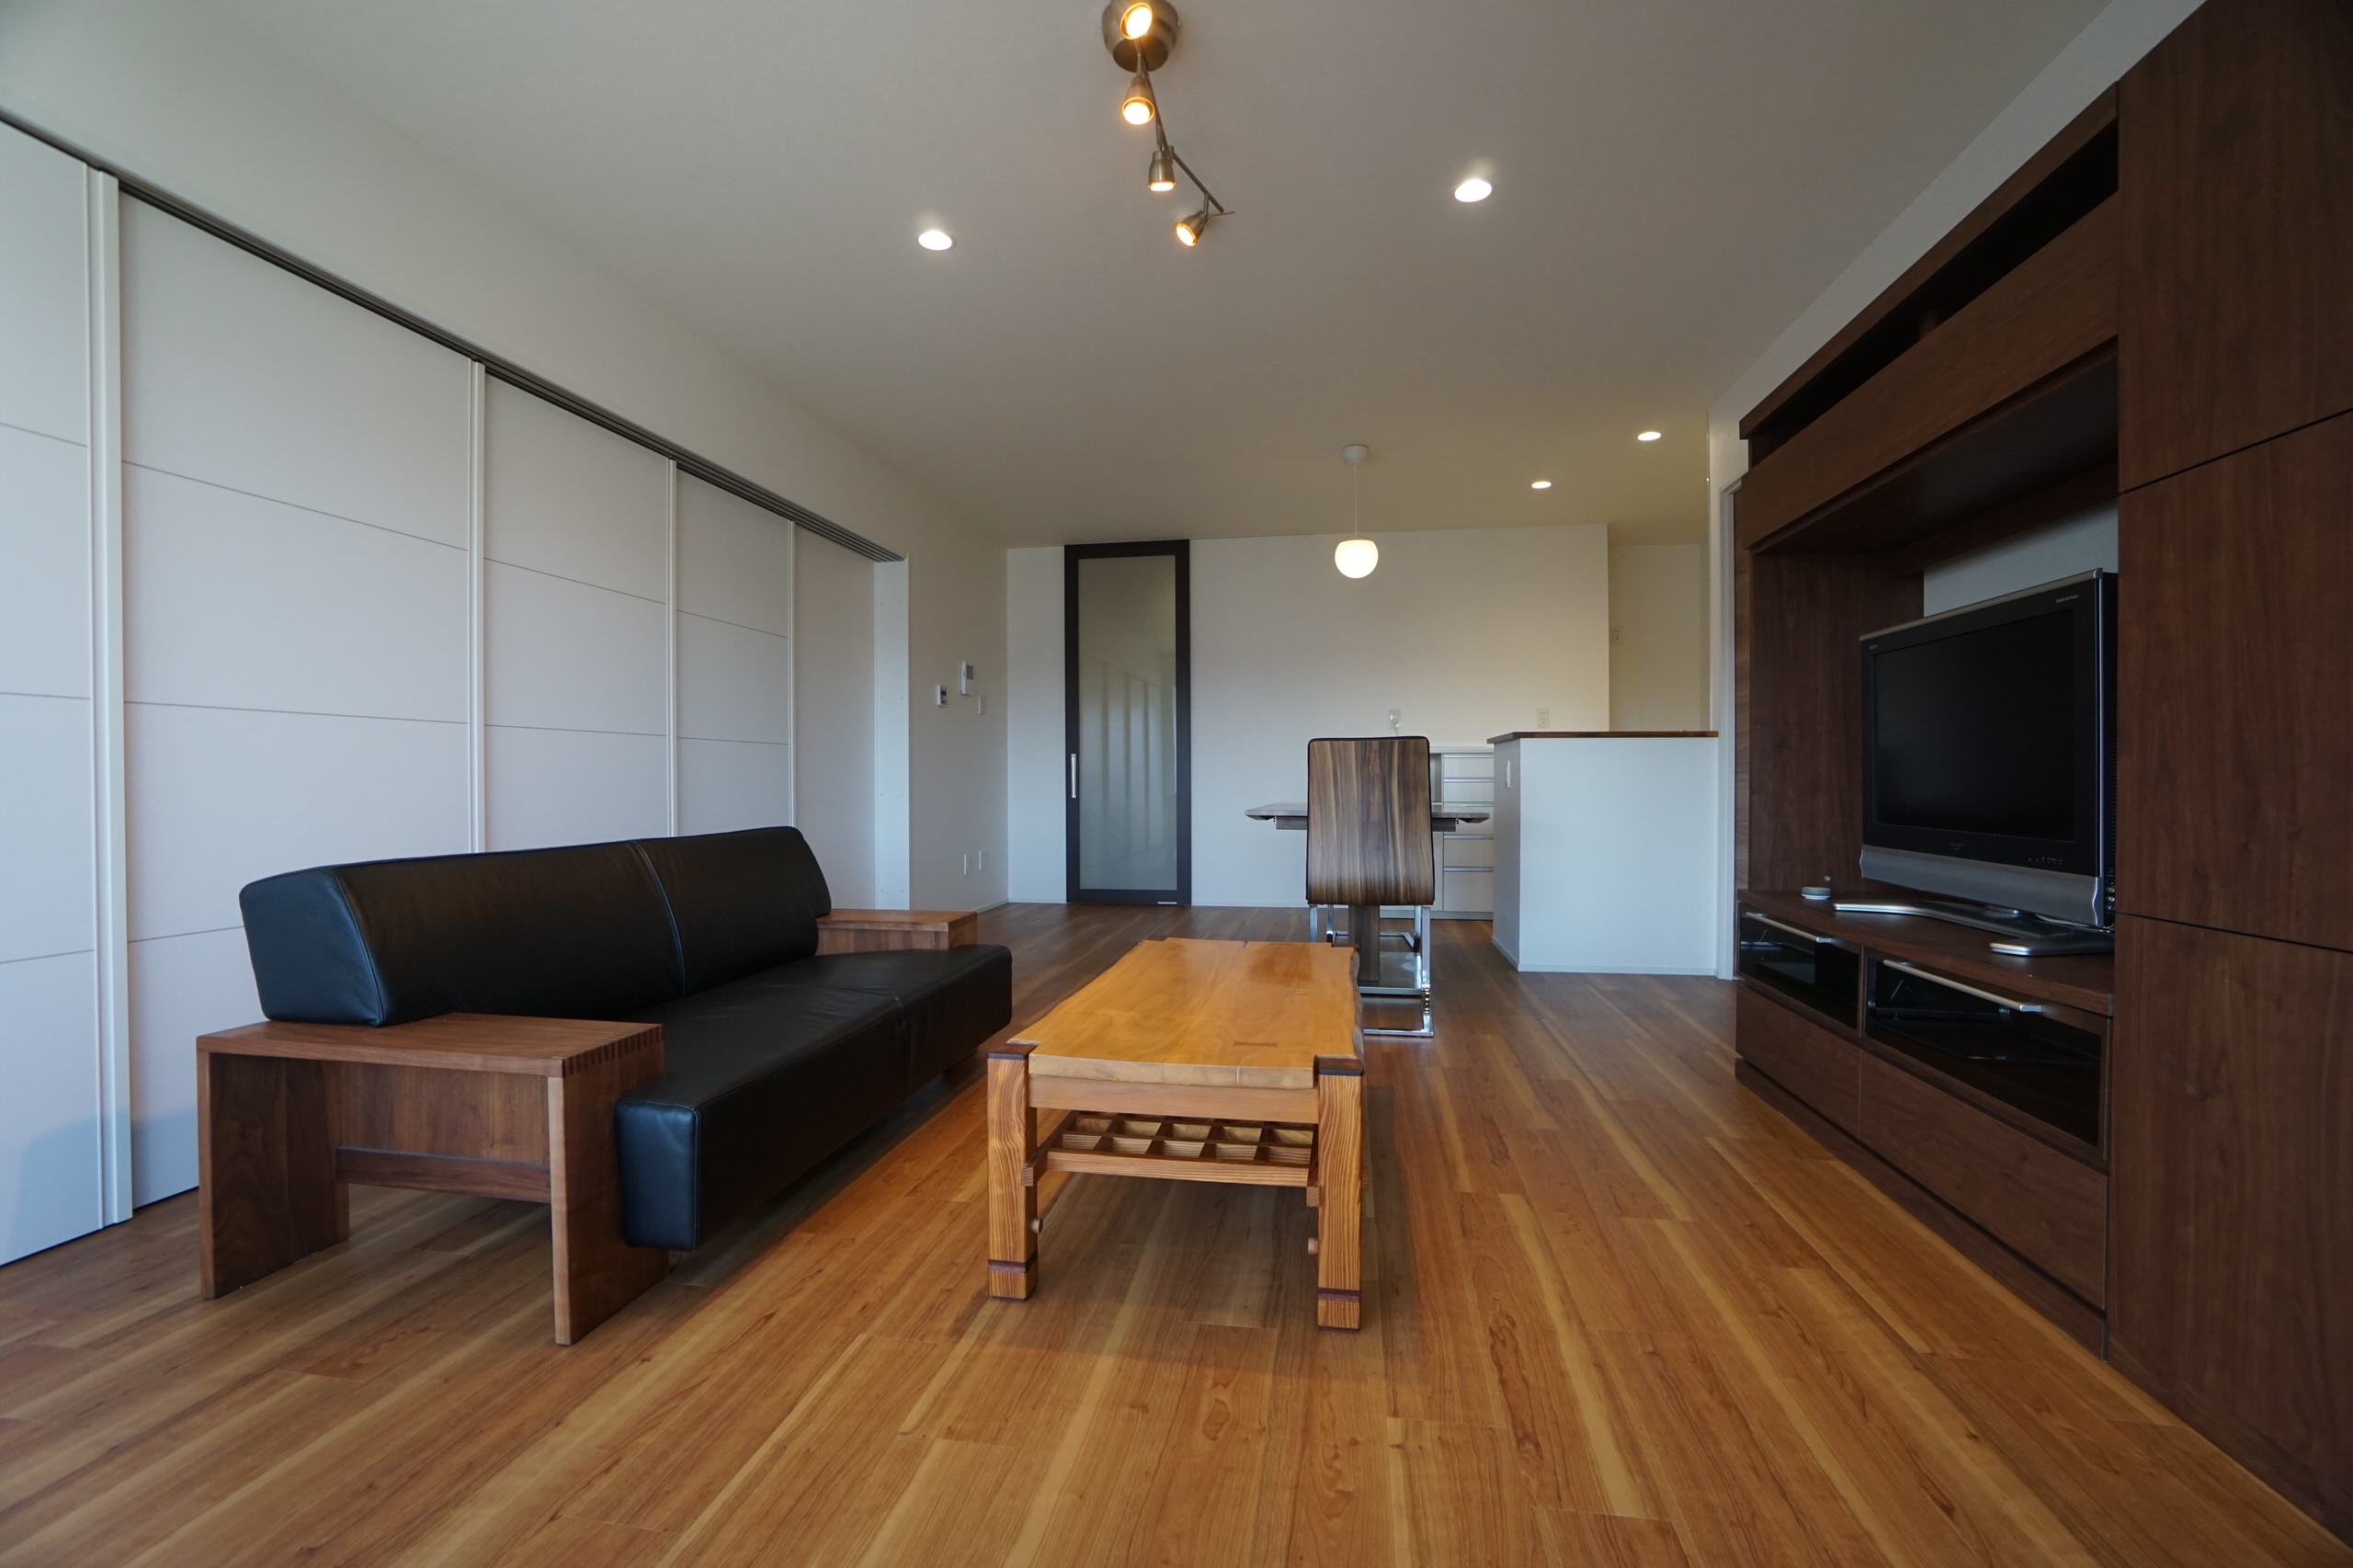 マンションリノベーション シンプルでミニマムな家 Contemporary Living Room Other By 弘木屋産業株式会社 Houzz